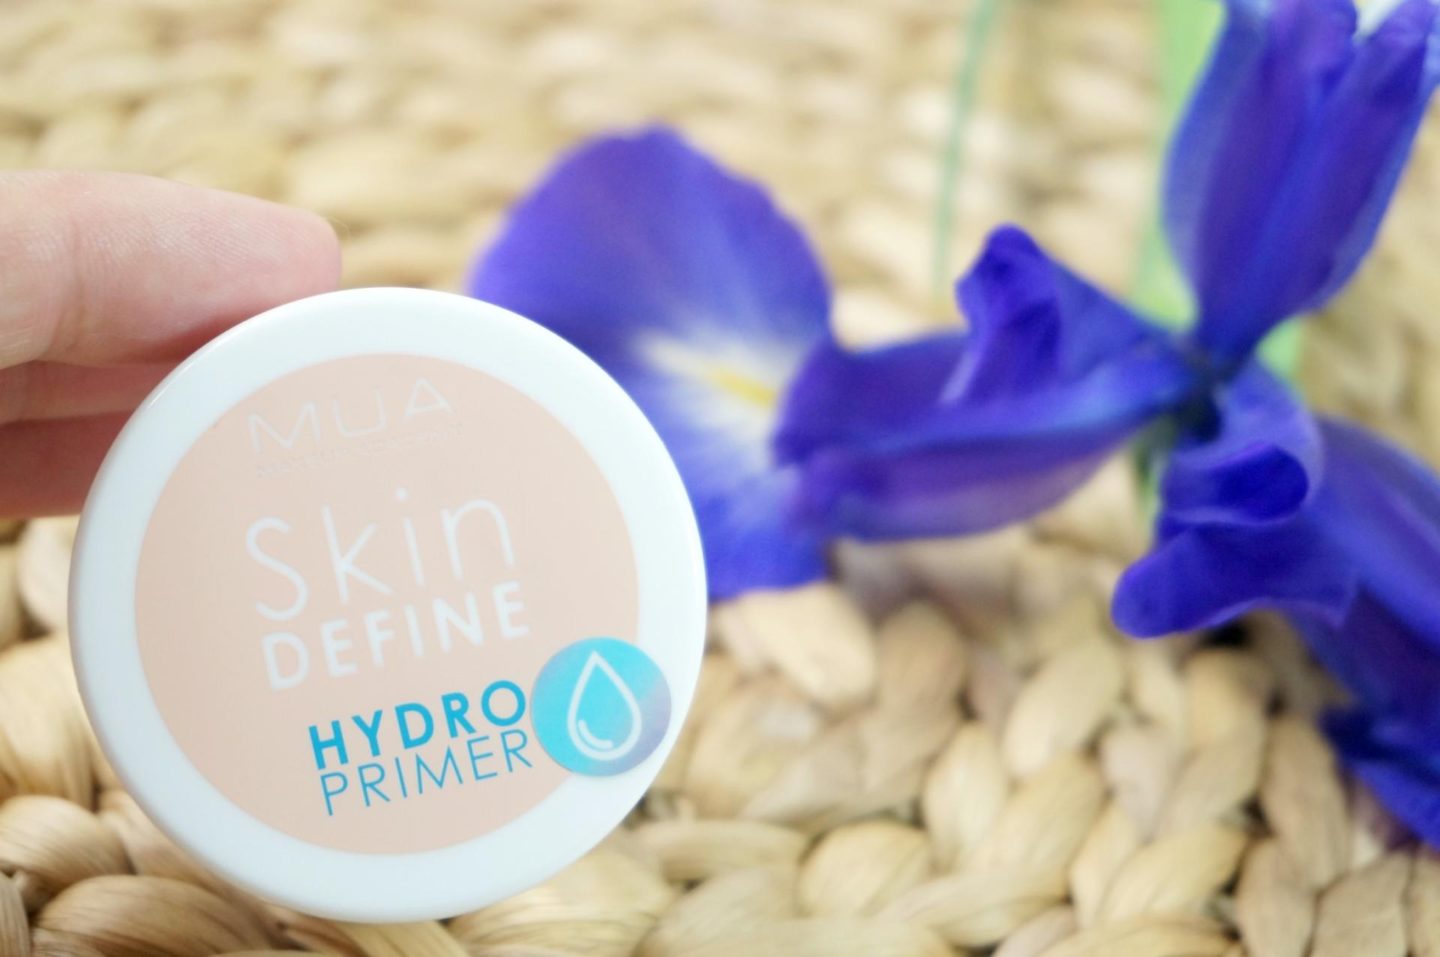 Mua Skin Define Hydro Gel primer